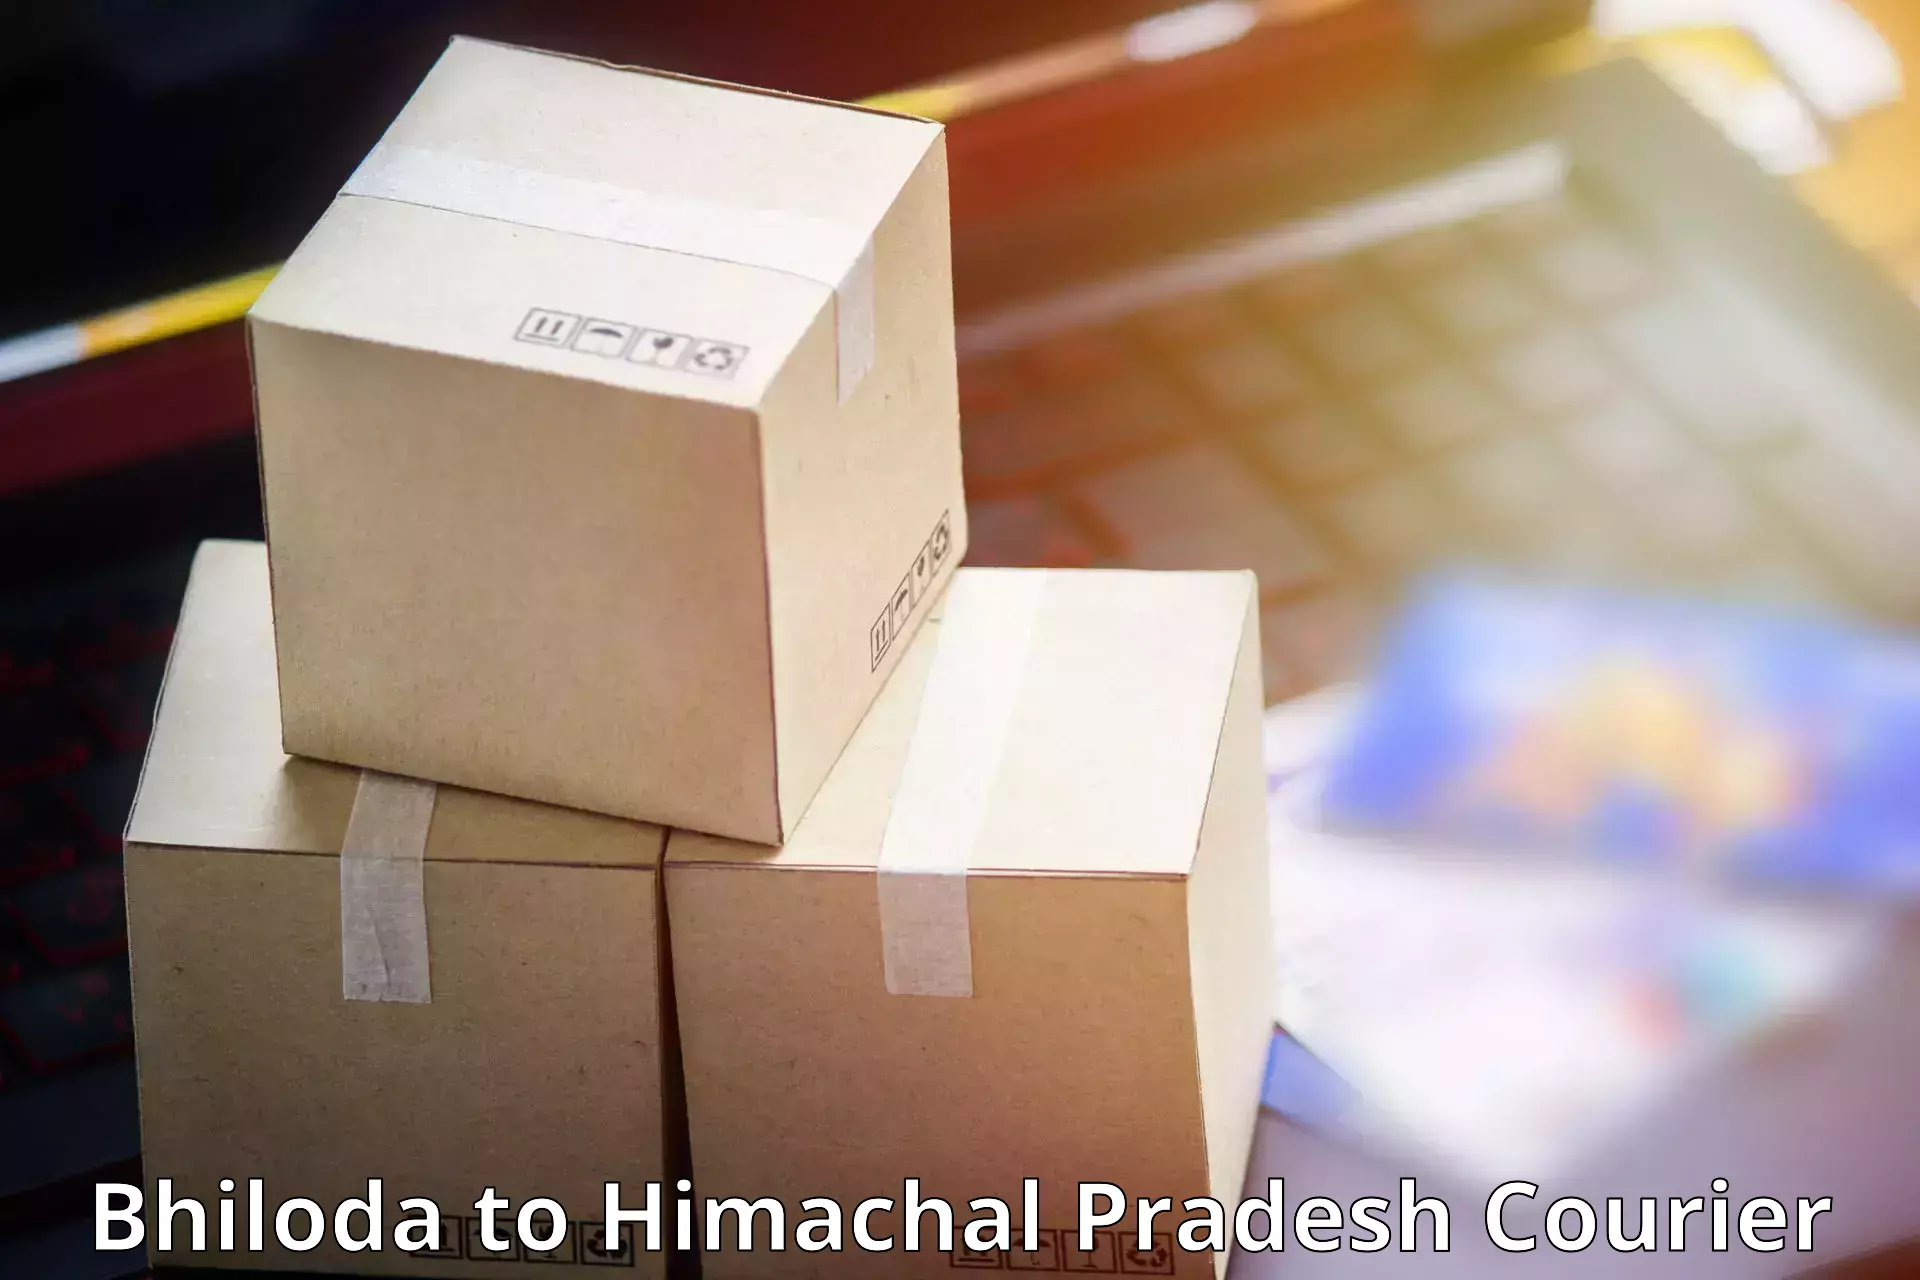 Express package handling Bhiloda to Jawali